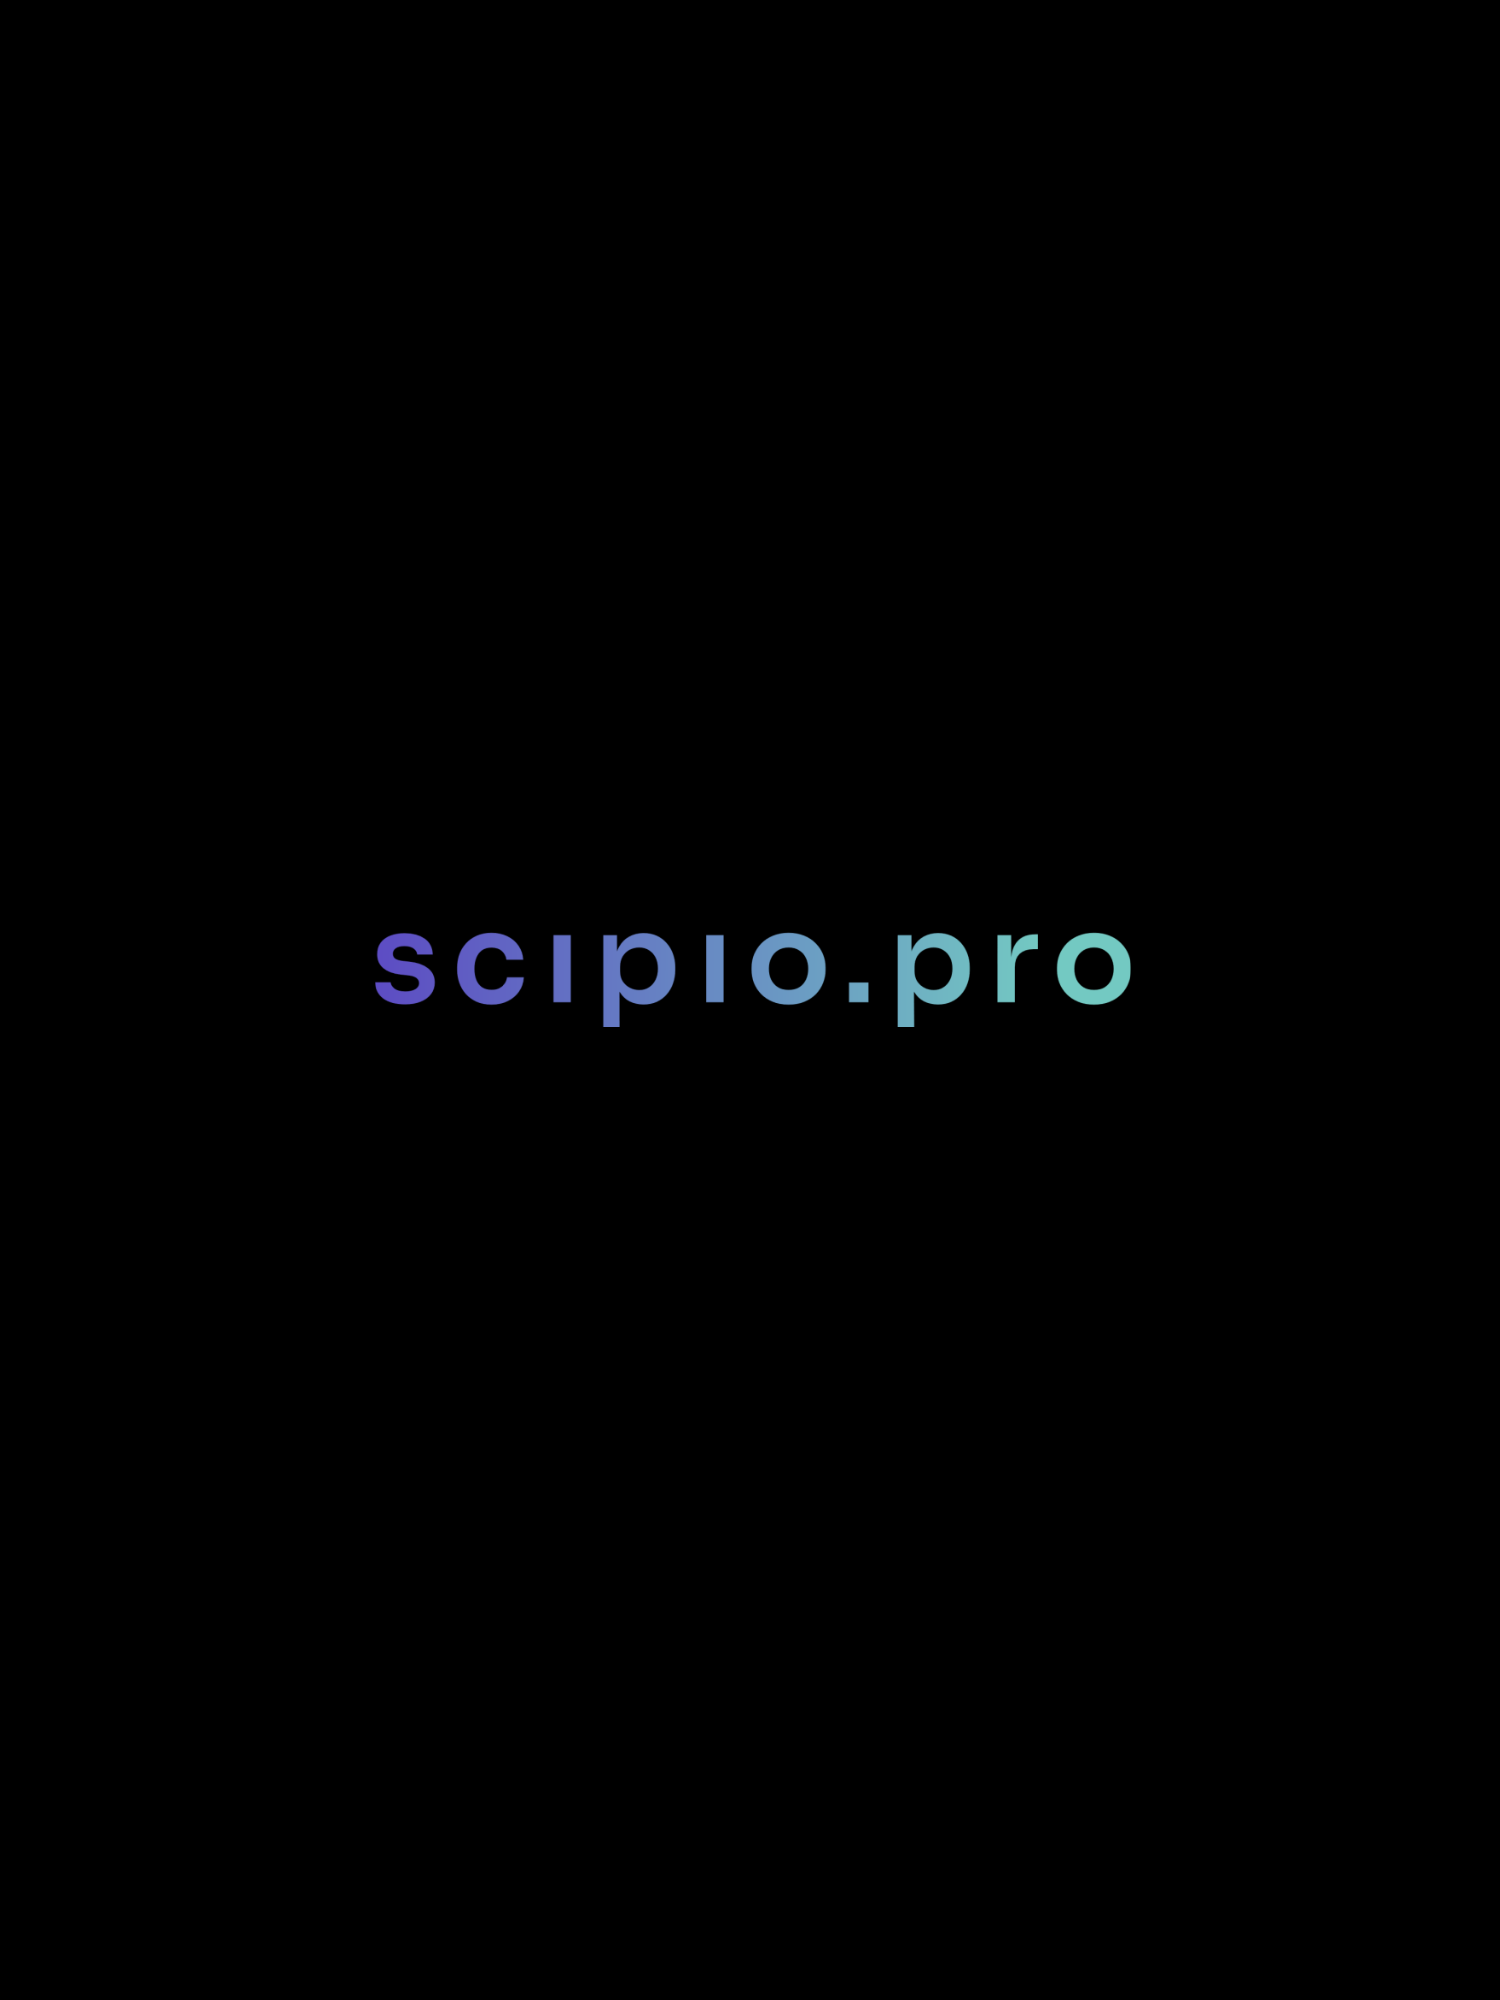  La suite Scipio Pro: Que se cache-t-il derrière les indicateurs?